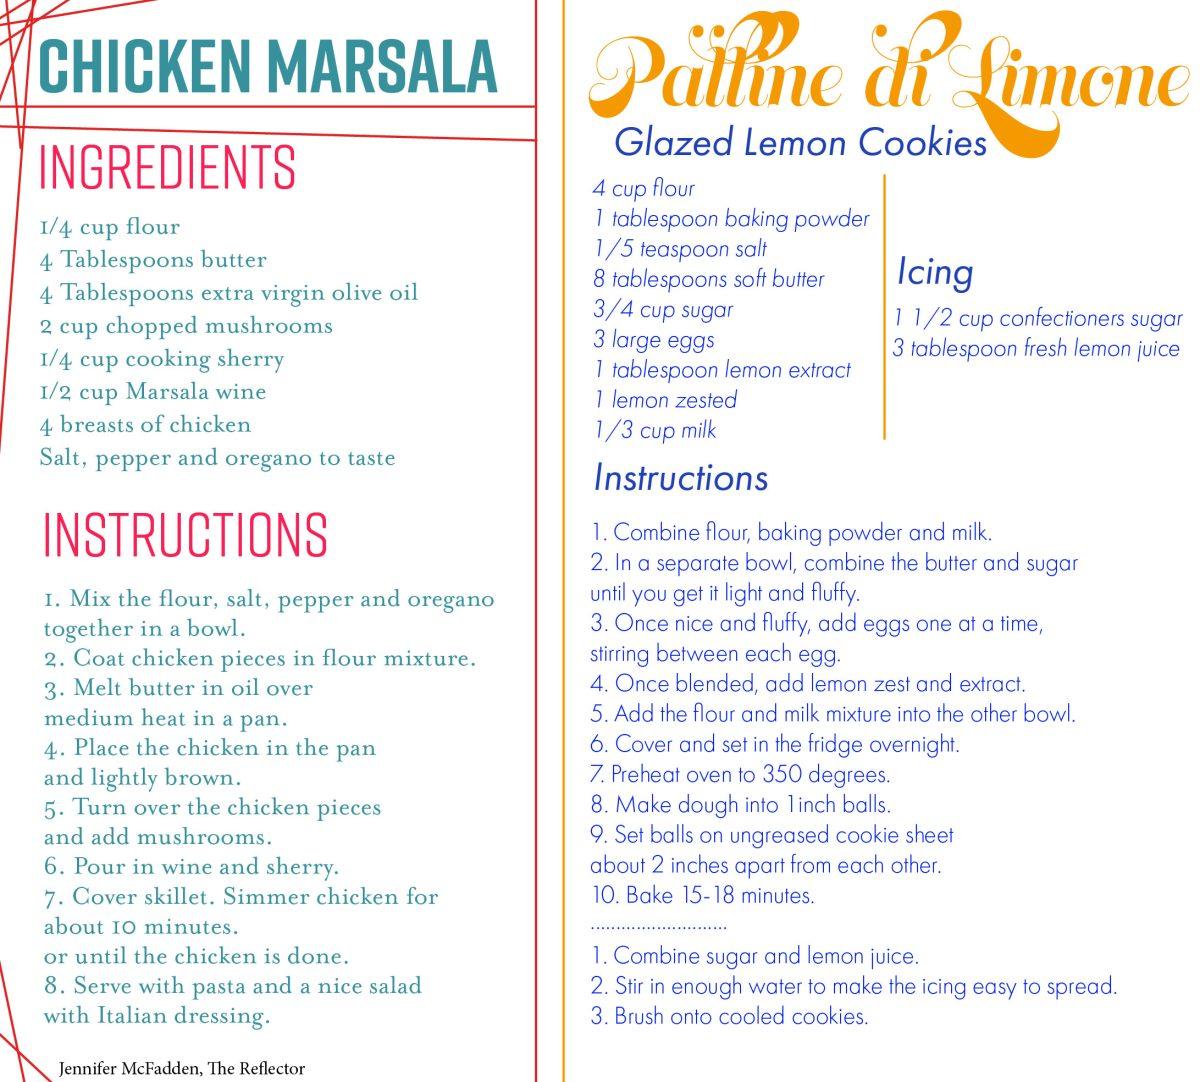 Palline+di+Limone+and+Chicken+Marala+are+two+delicious+Italian+recipies.